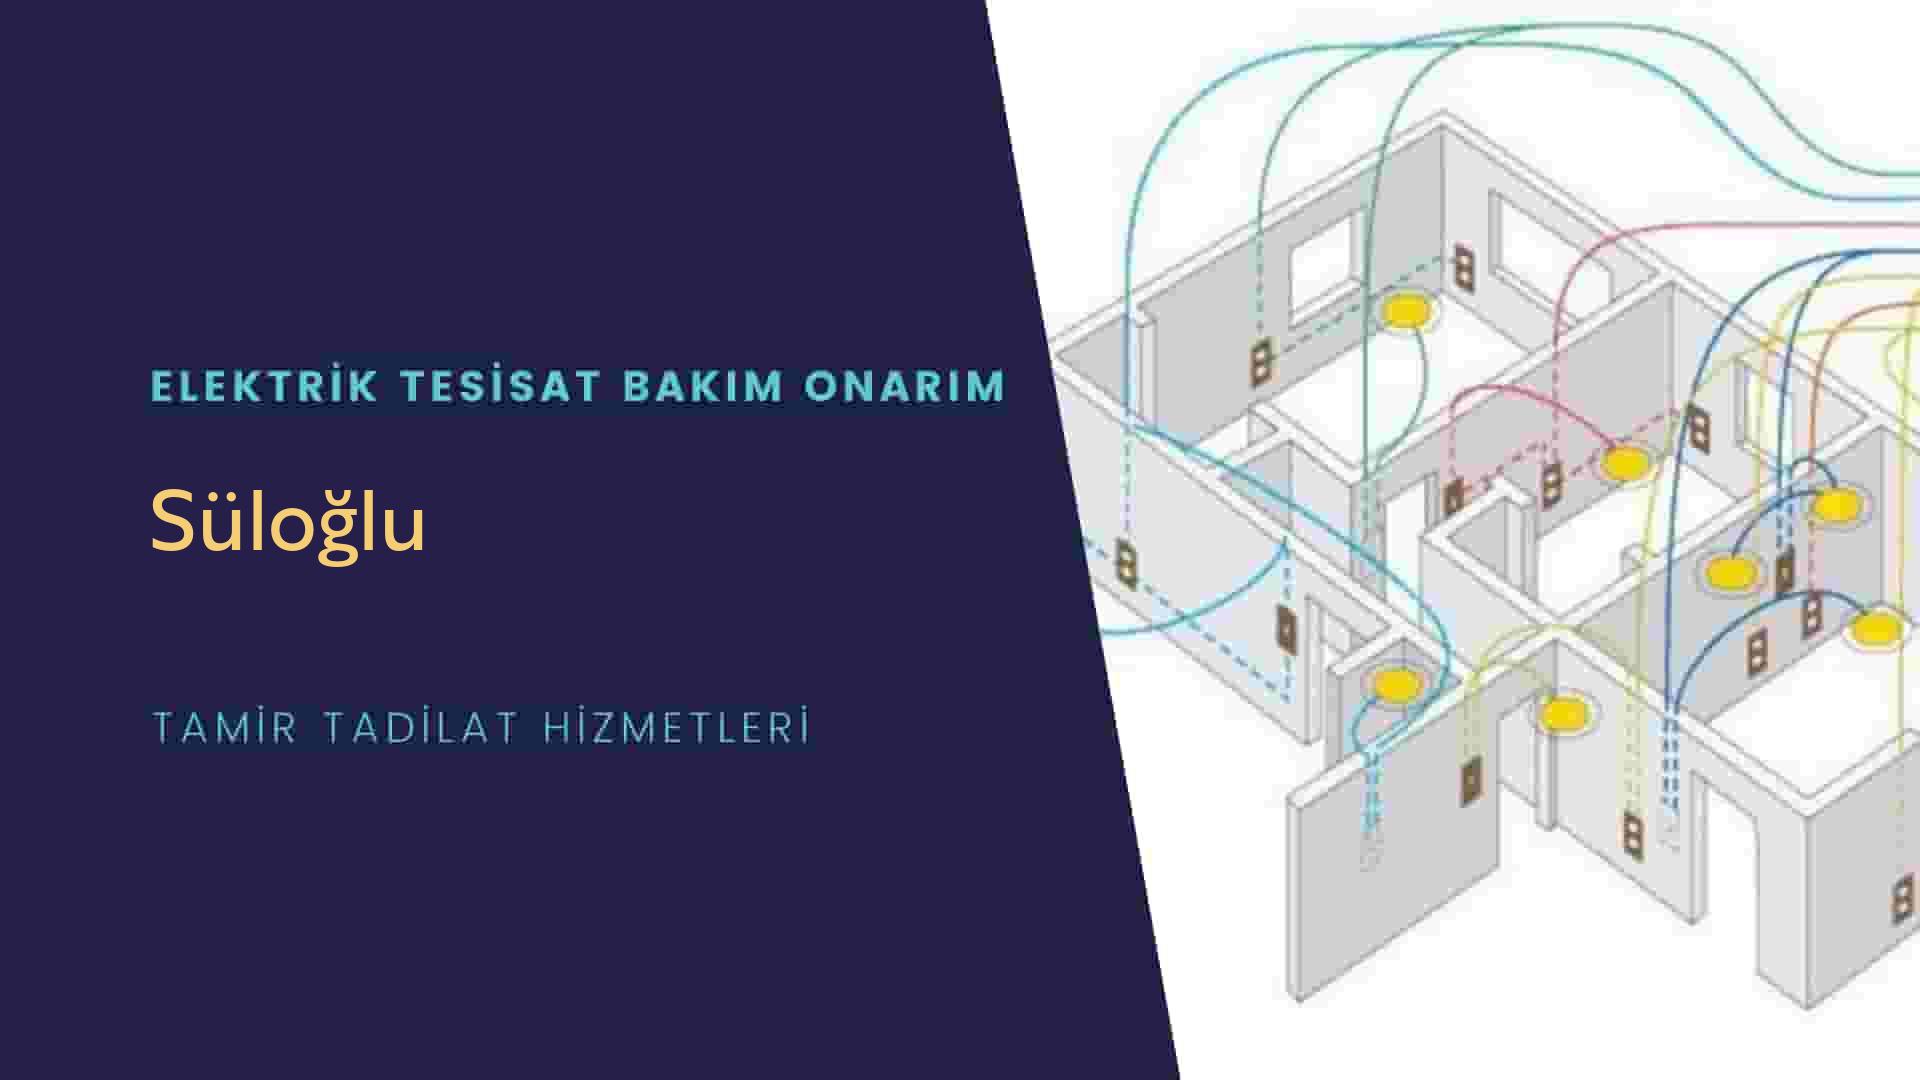 Süloğlu'da elektrik tesisatı ustalarımı arıyorsunuz doğru adrestenizi Süloğlu elektrik tesisatı ustalarımız 7/24 sizlere hizmet vermekten mutluluk duyar.